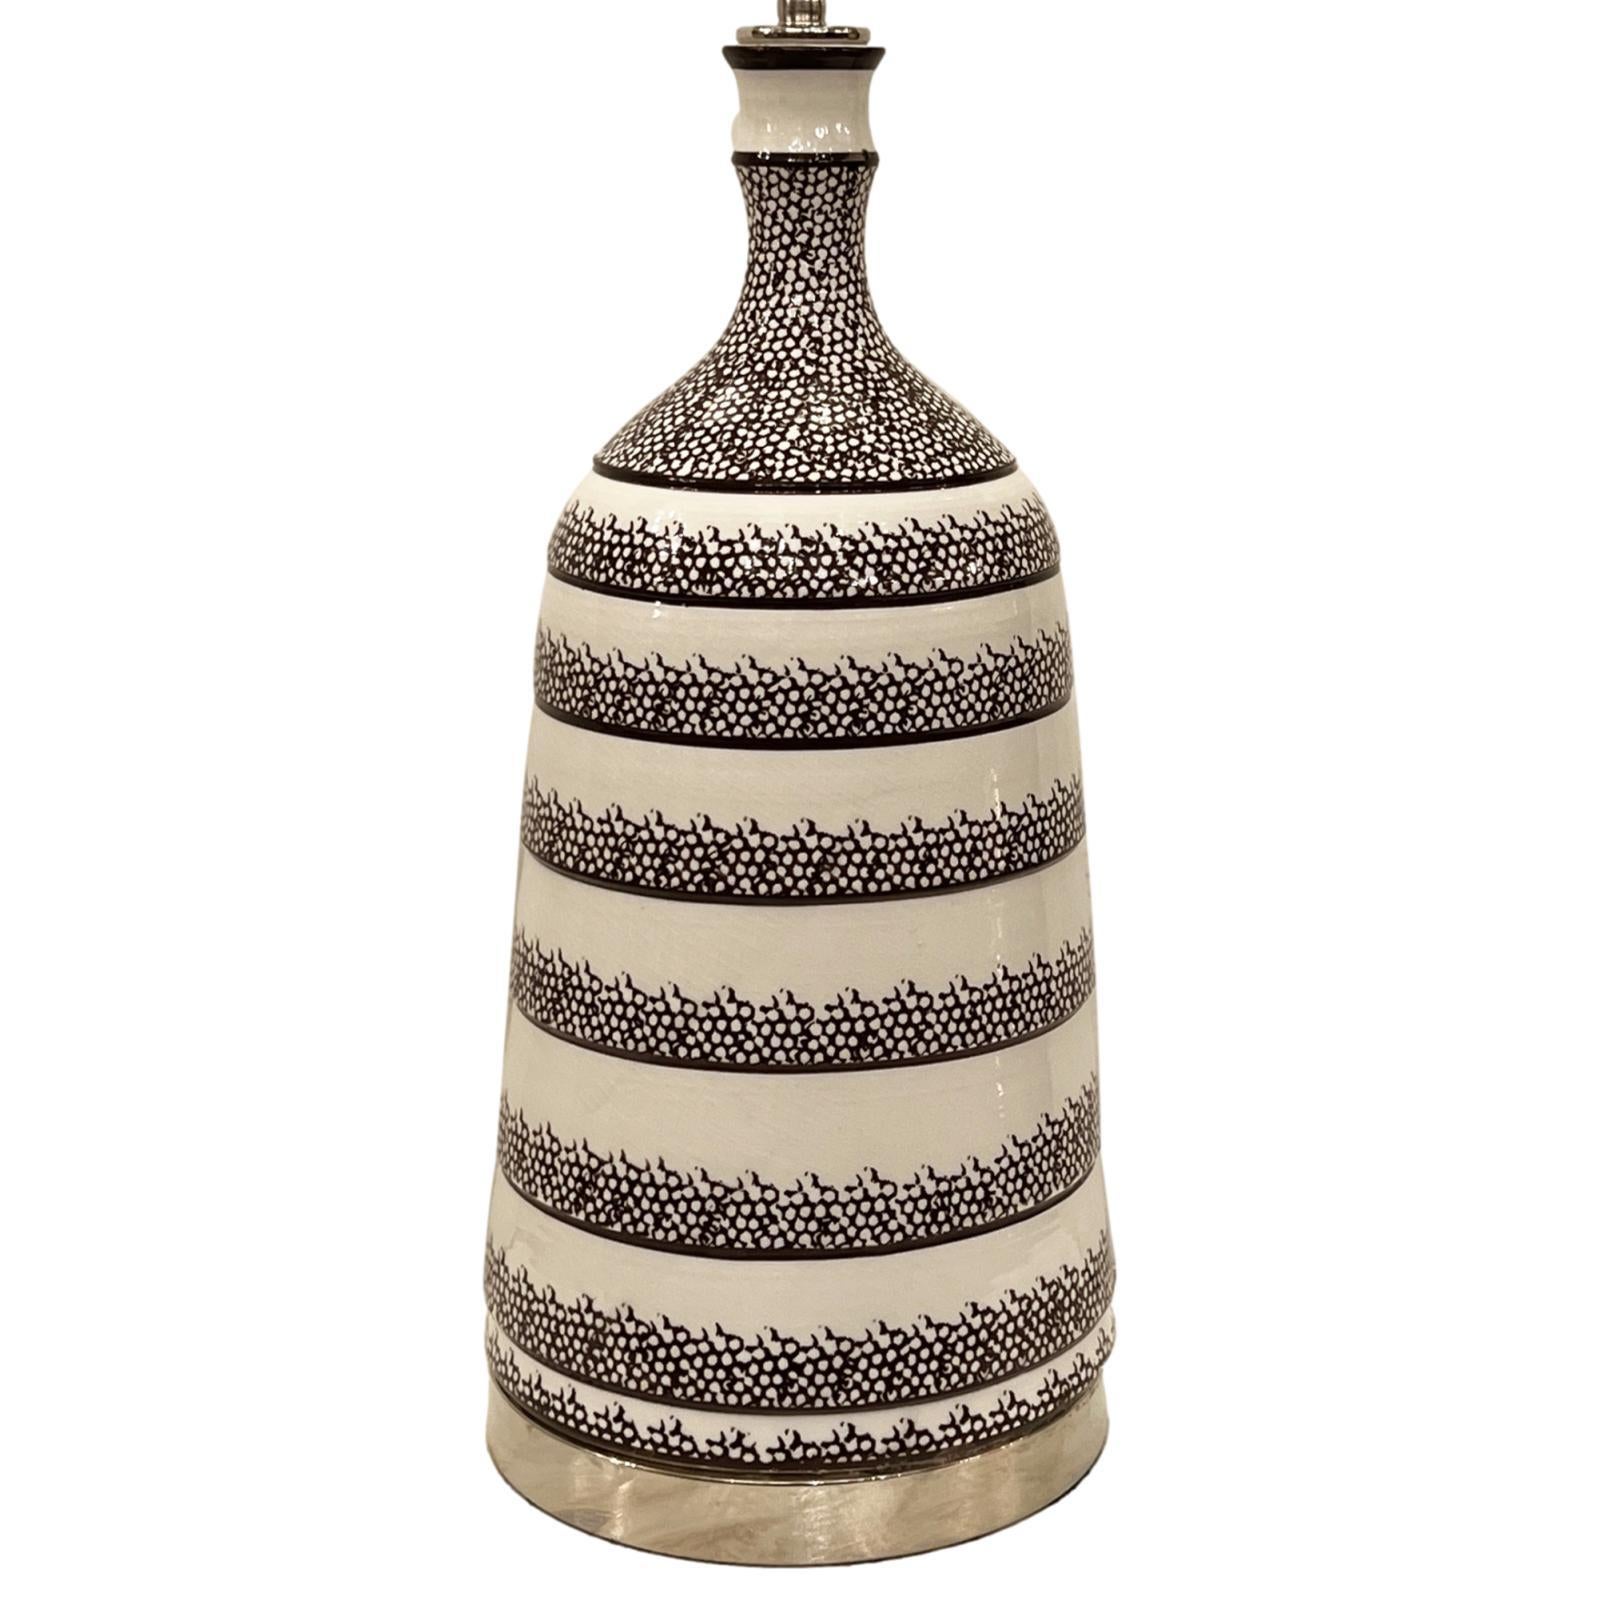 Eine dänische Porzellan-Tischlampe mit Silbersockel aus den 1960er Jahren.

Abmessungen:
Höhe des Gehäuses: 19